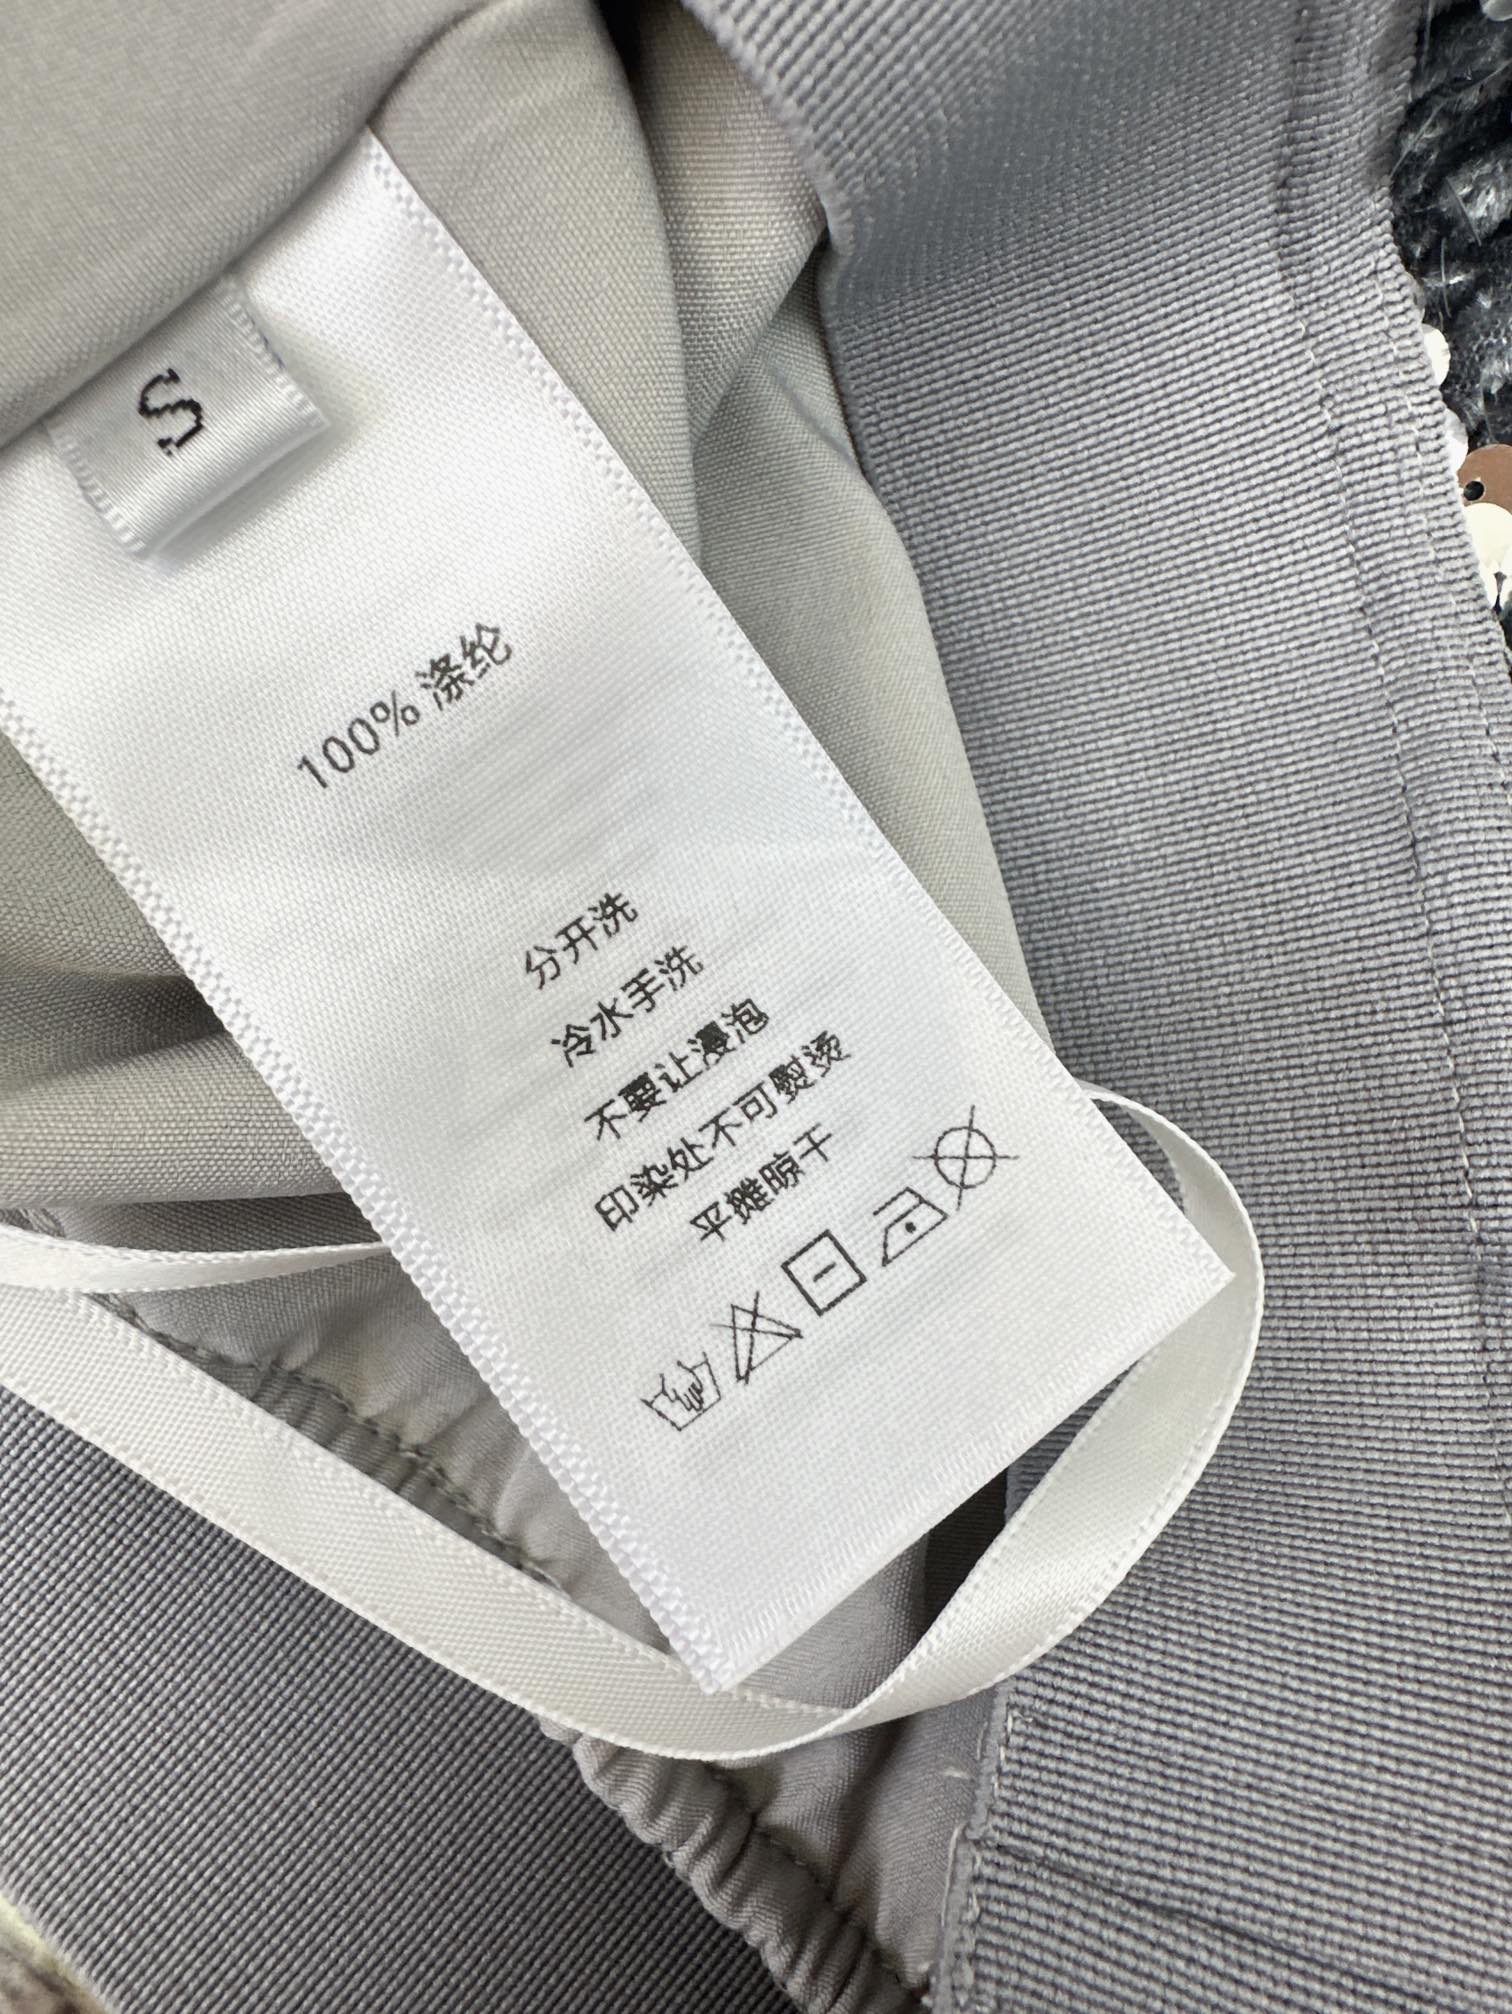 Miu24Ss春夏最新款logo织带亮片半裙高级感调调建议秒收非常好搭配各种T恤外套叠穿时髦造型必备字母